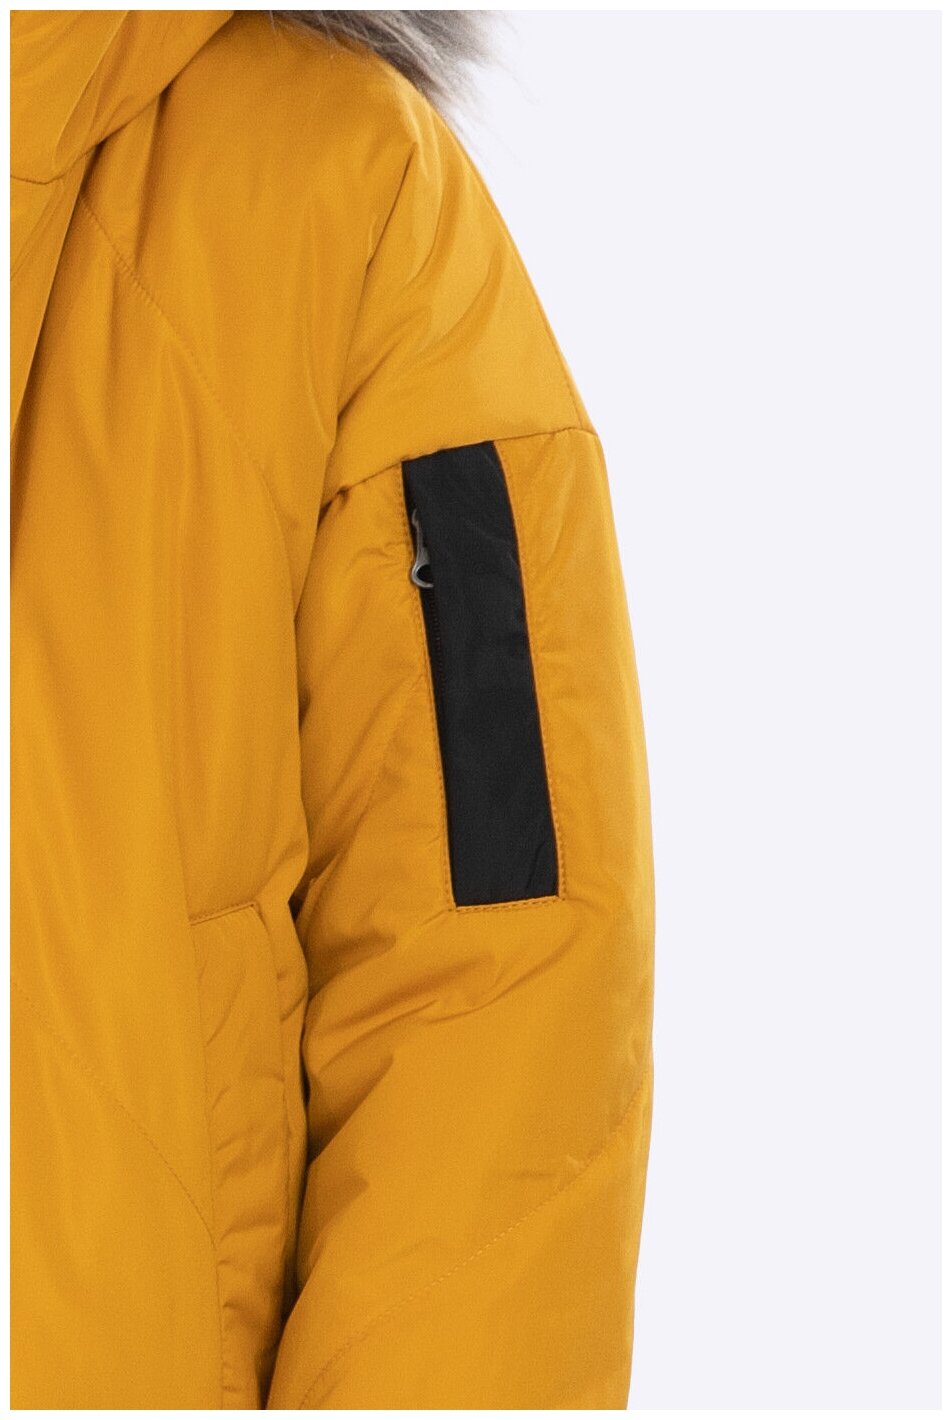 Куртка Шалуны зимняя, удлиненная, размер 36, 140, желтый - фотография № 8